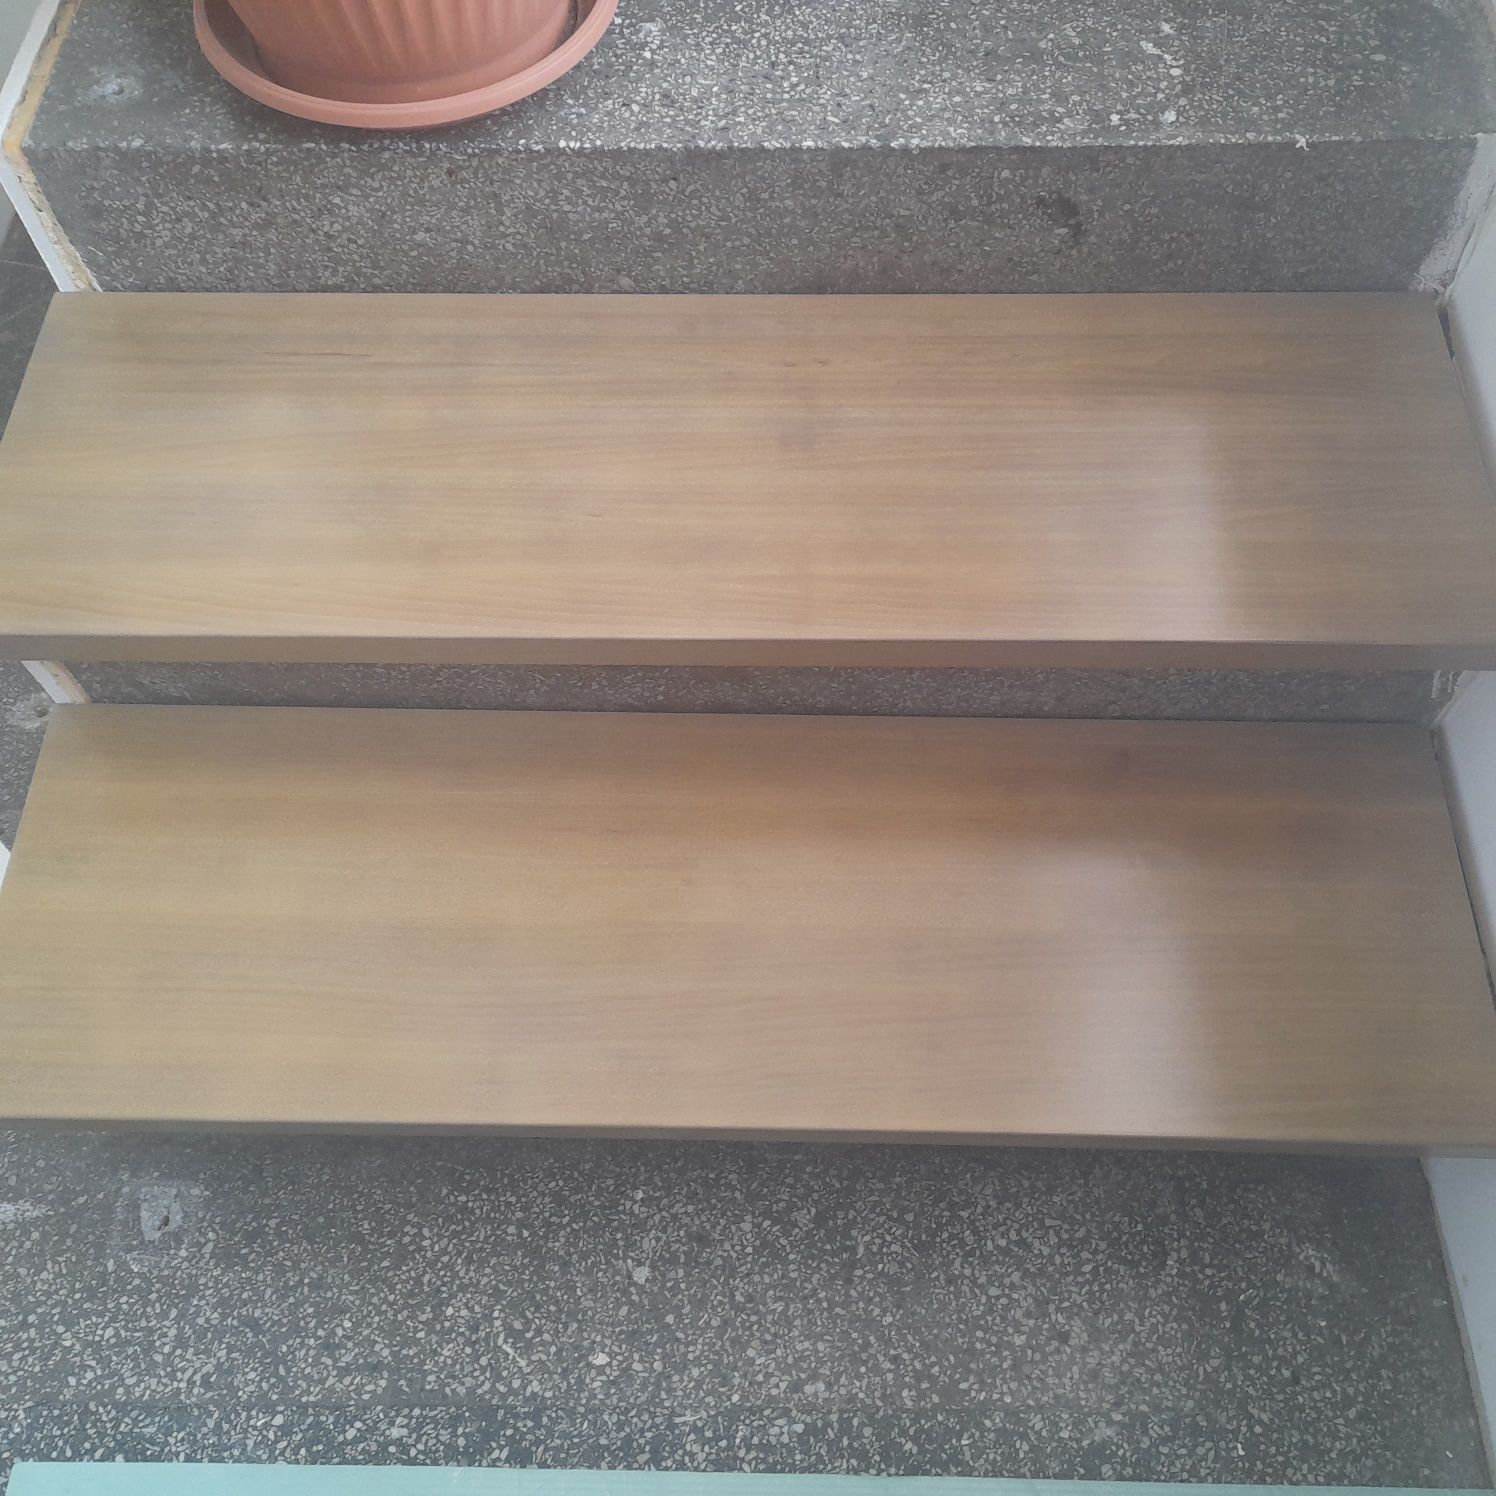 Trepy bukowe 17szt malowane schody,stopnie nowe  100x30x3